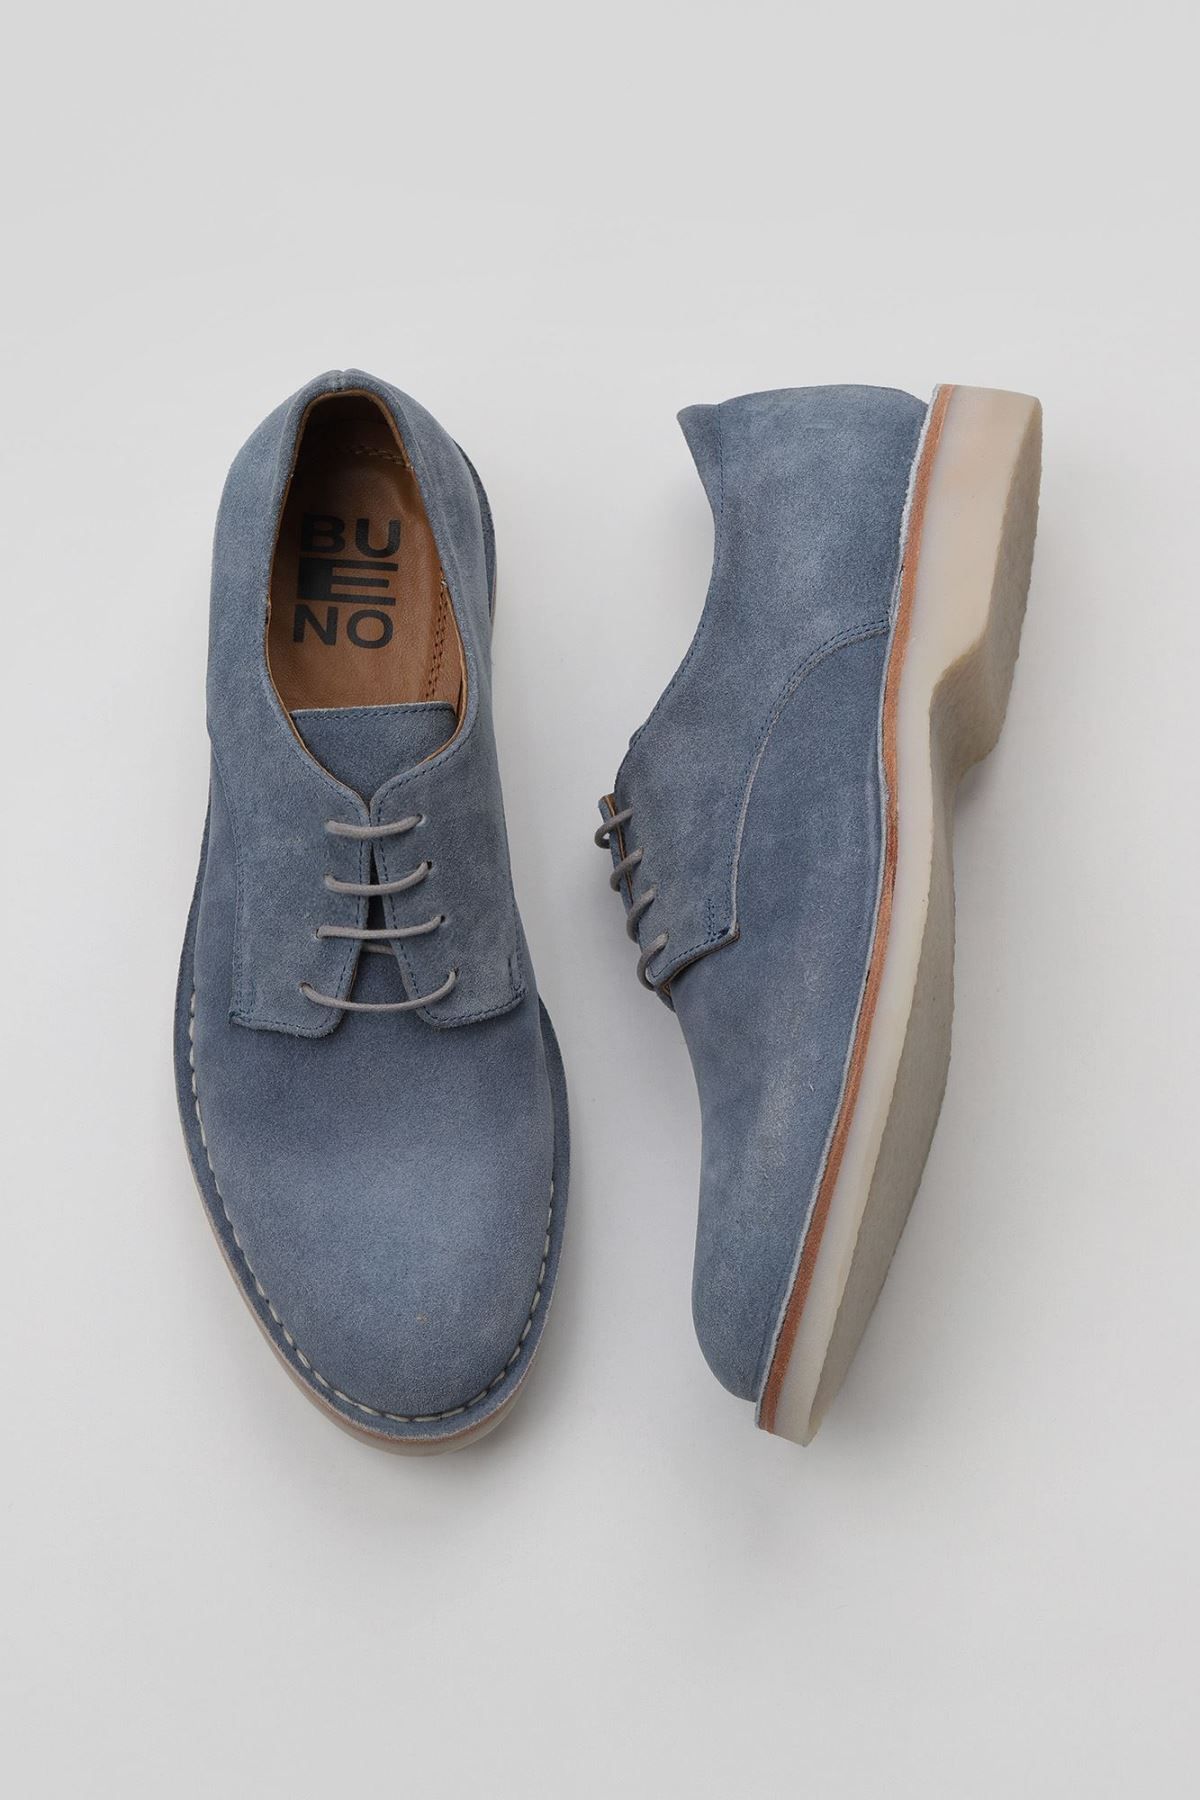 Bueno Shoes Gri Mavi Süet Erkek Klasik Ayakkabı